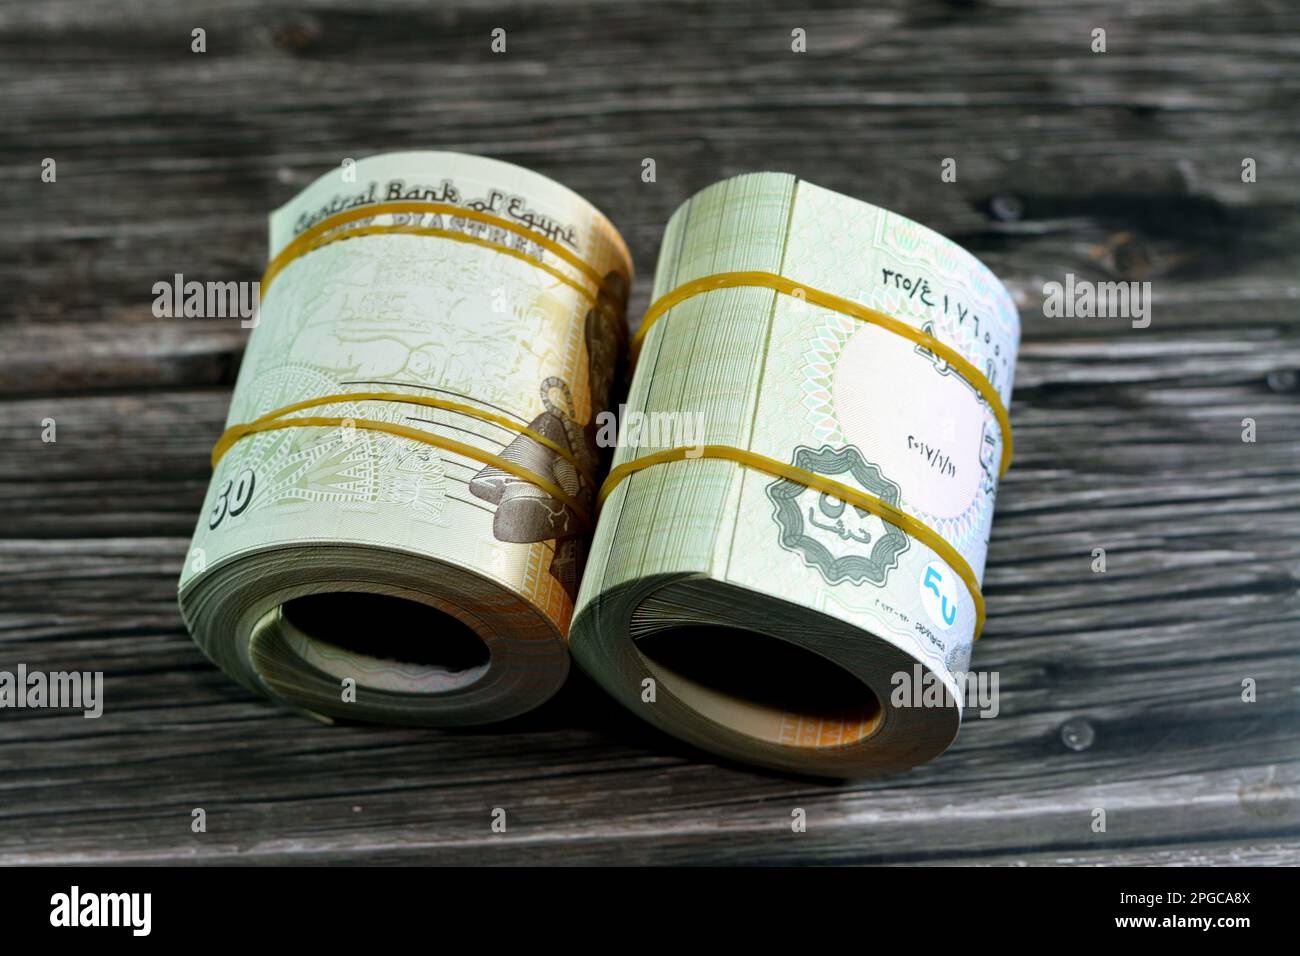 50 piasters metà EGP LE egiziane sterline banconote in denaro arrotolato con fasce di gomma con un'immagine della moschea di al Azhar e Ramesses II il secondo 2nd, ad esempio Foto Stock